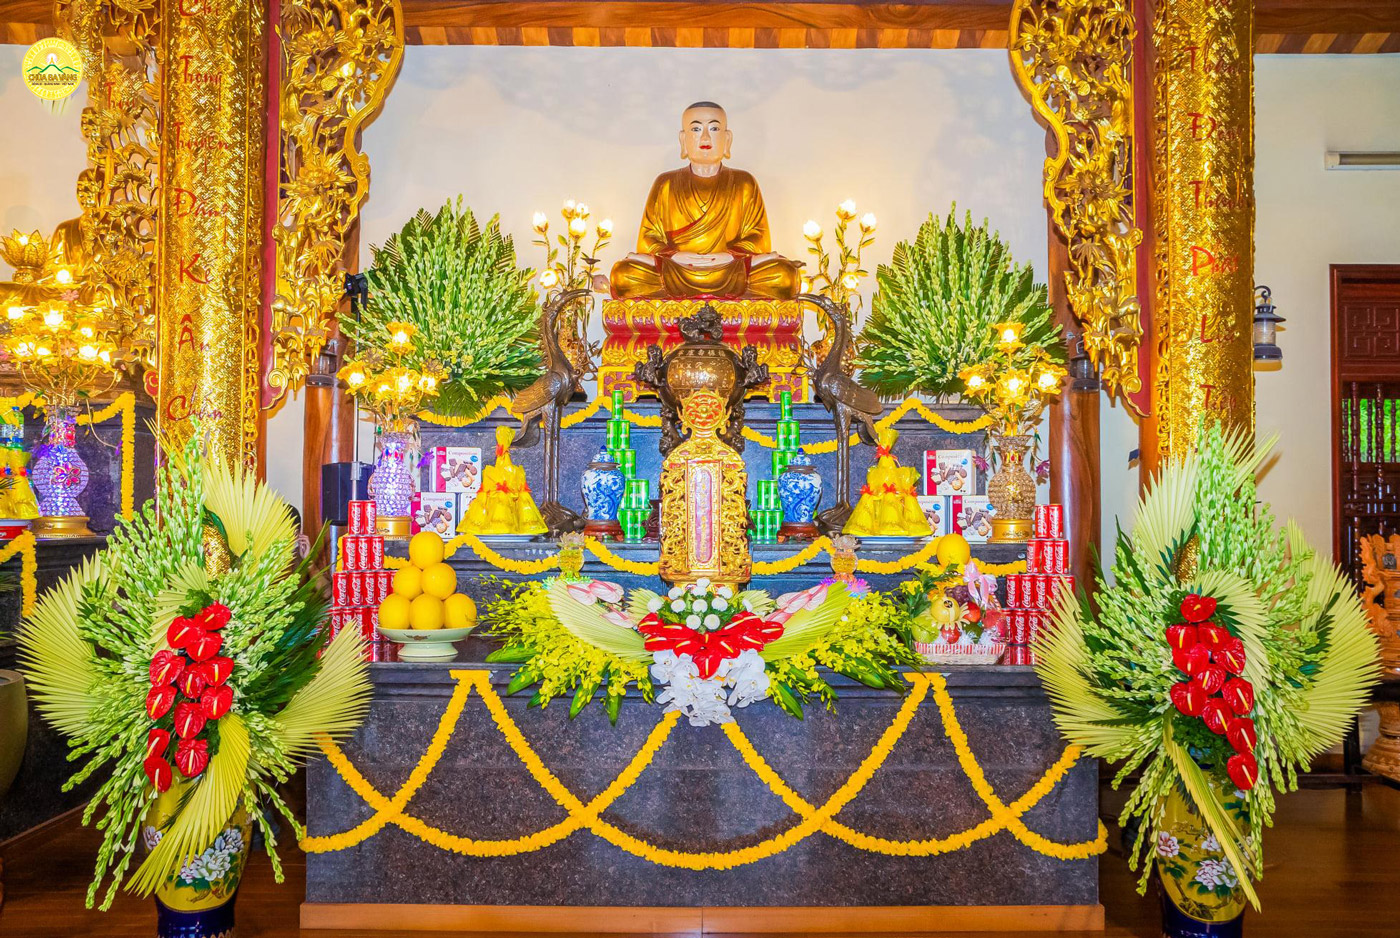 Ban thờ linh vị và tôn tượng Tổ sư Trúc Lâm Ma Ha Sa Môn Tuệ Bích Phổ Giác tại chùa Ba Vàng.  